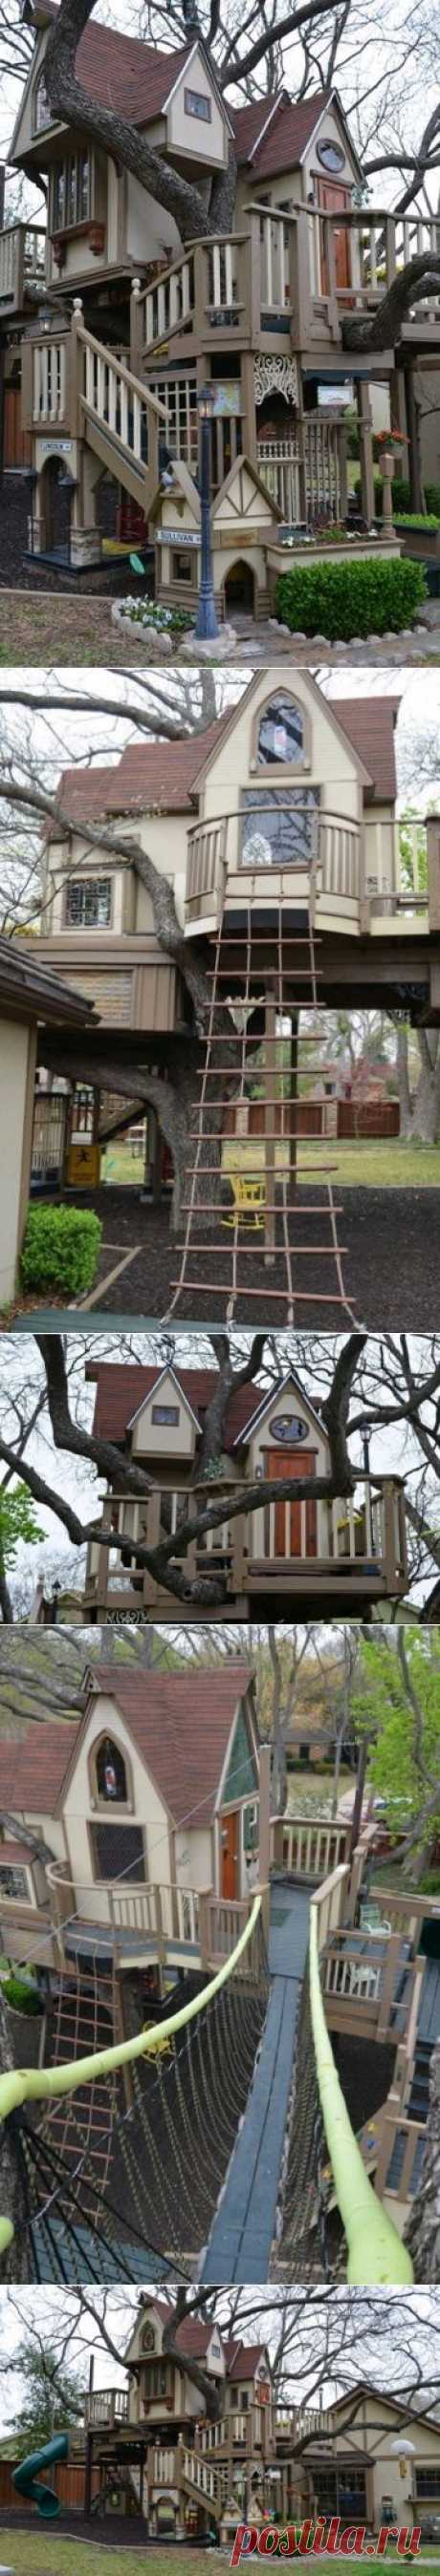 Как сделать домик на дереве для детских игр